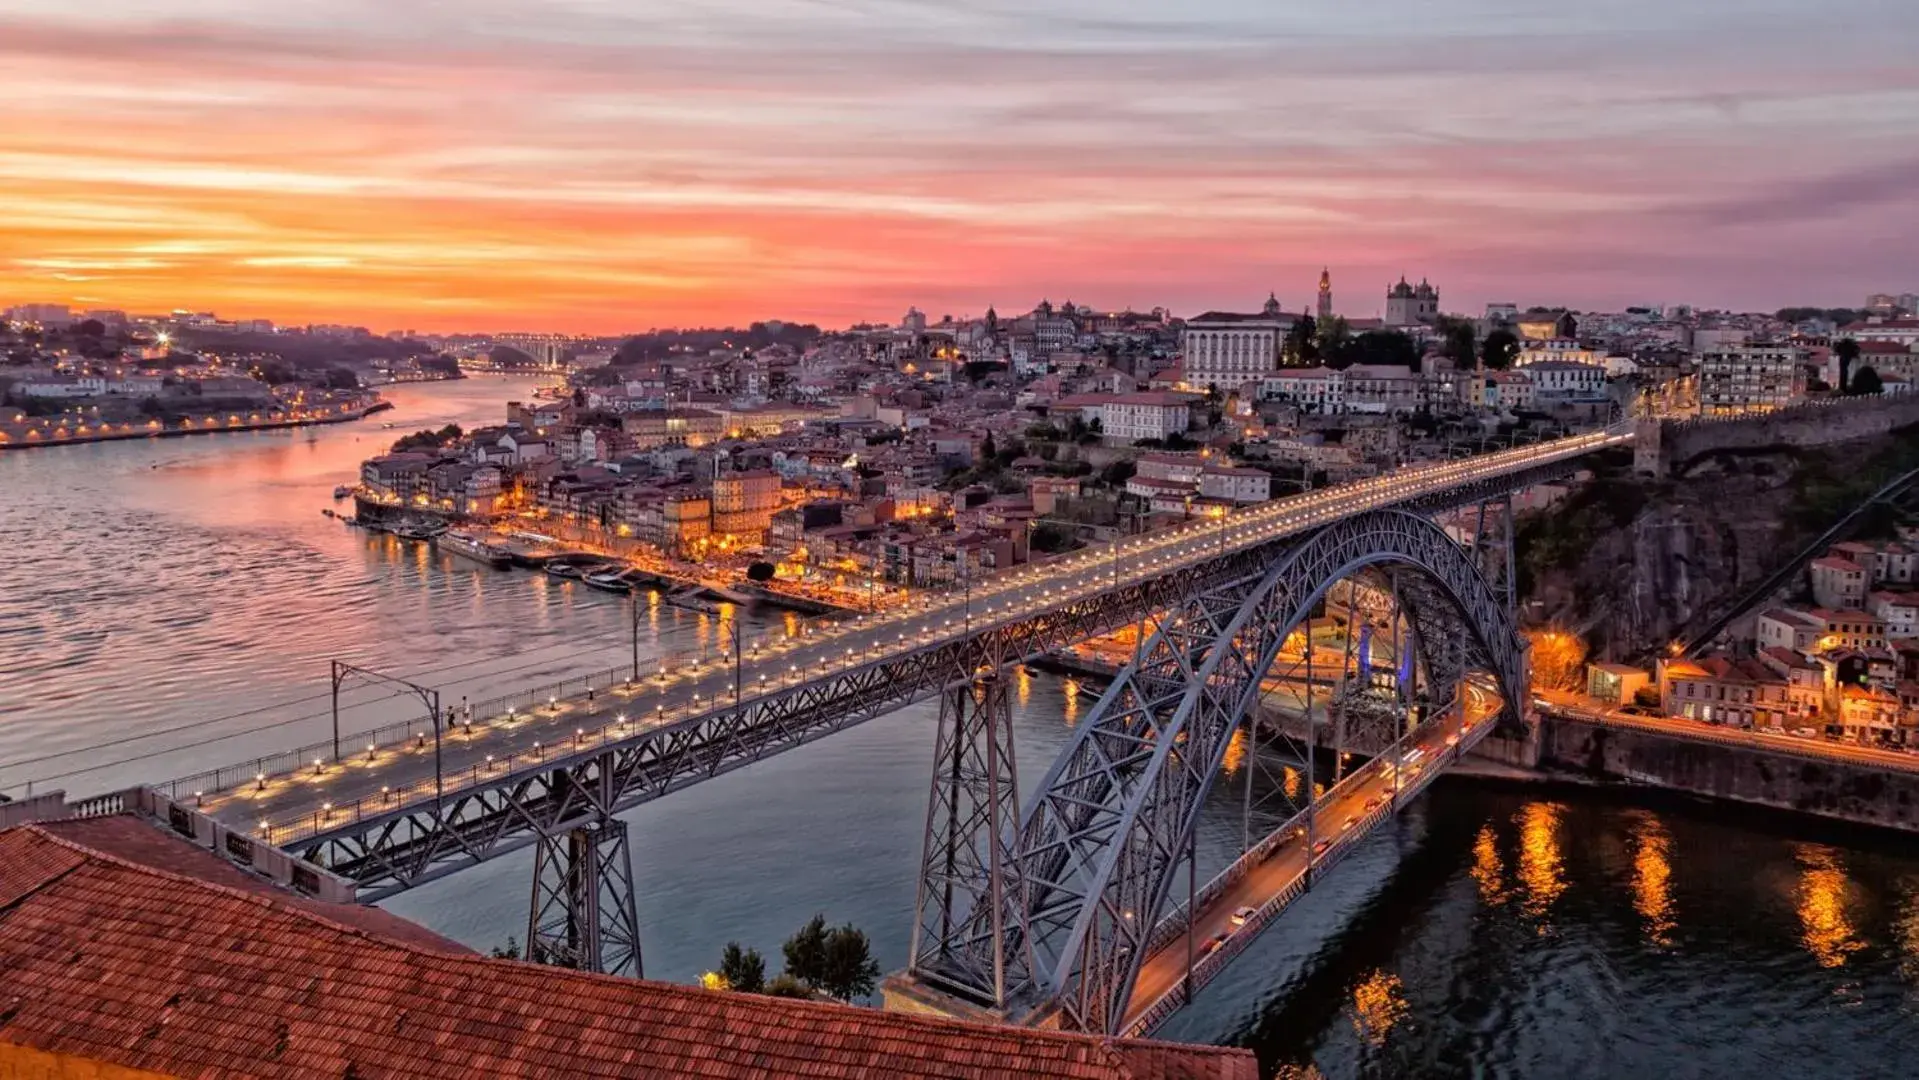 Sunrise/Sunset in Porto Royal Bridges Hotel